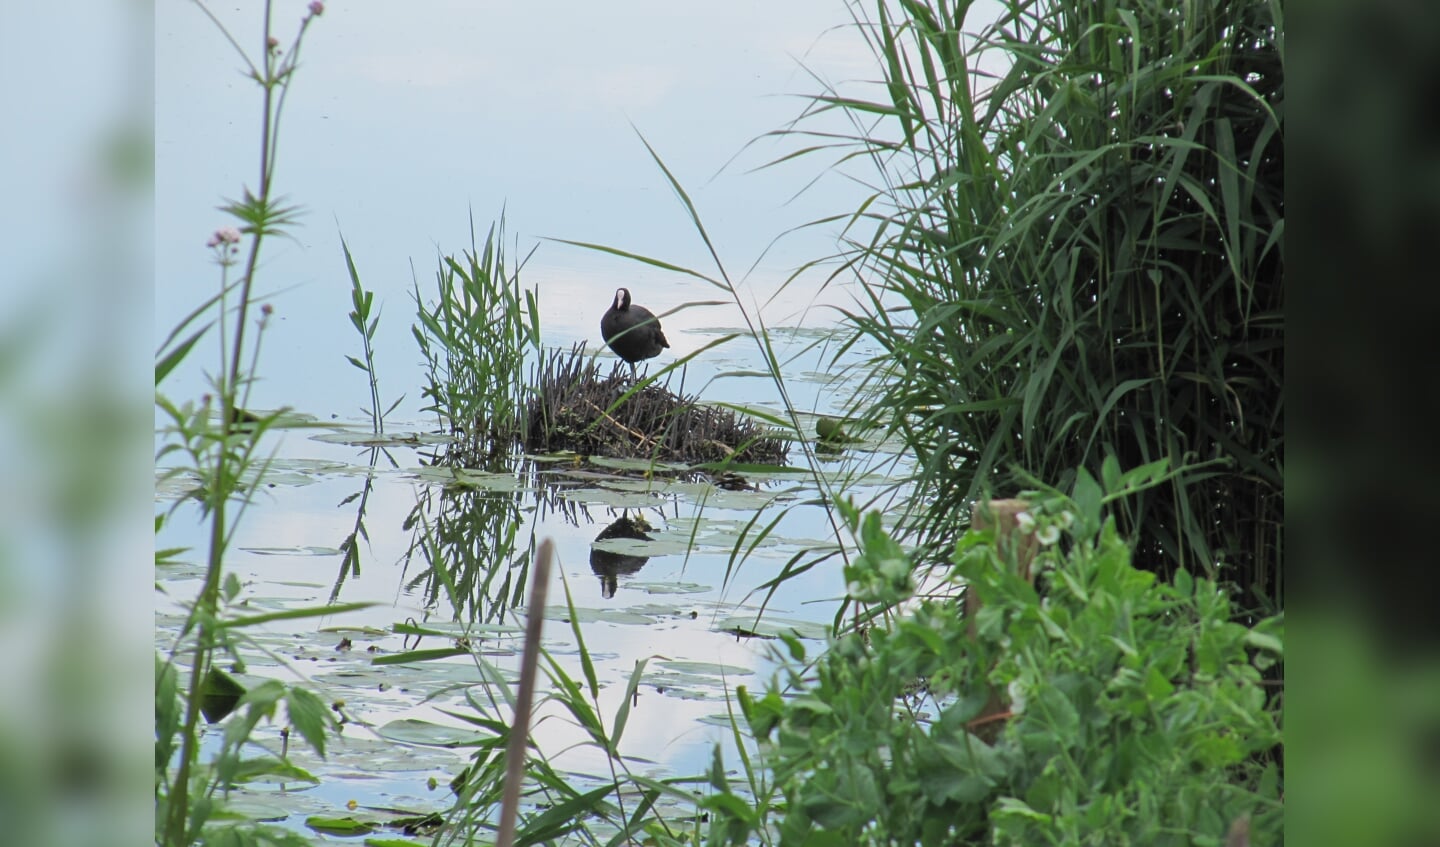 'Deze foto is gemaakt op 14 juni tijdens een fietstocht in Kinderdijk. De waakzaamheid van de vogel op zijn nest. Hoe mooi kan de natuur zijn!'